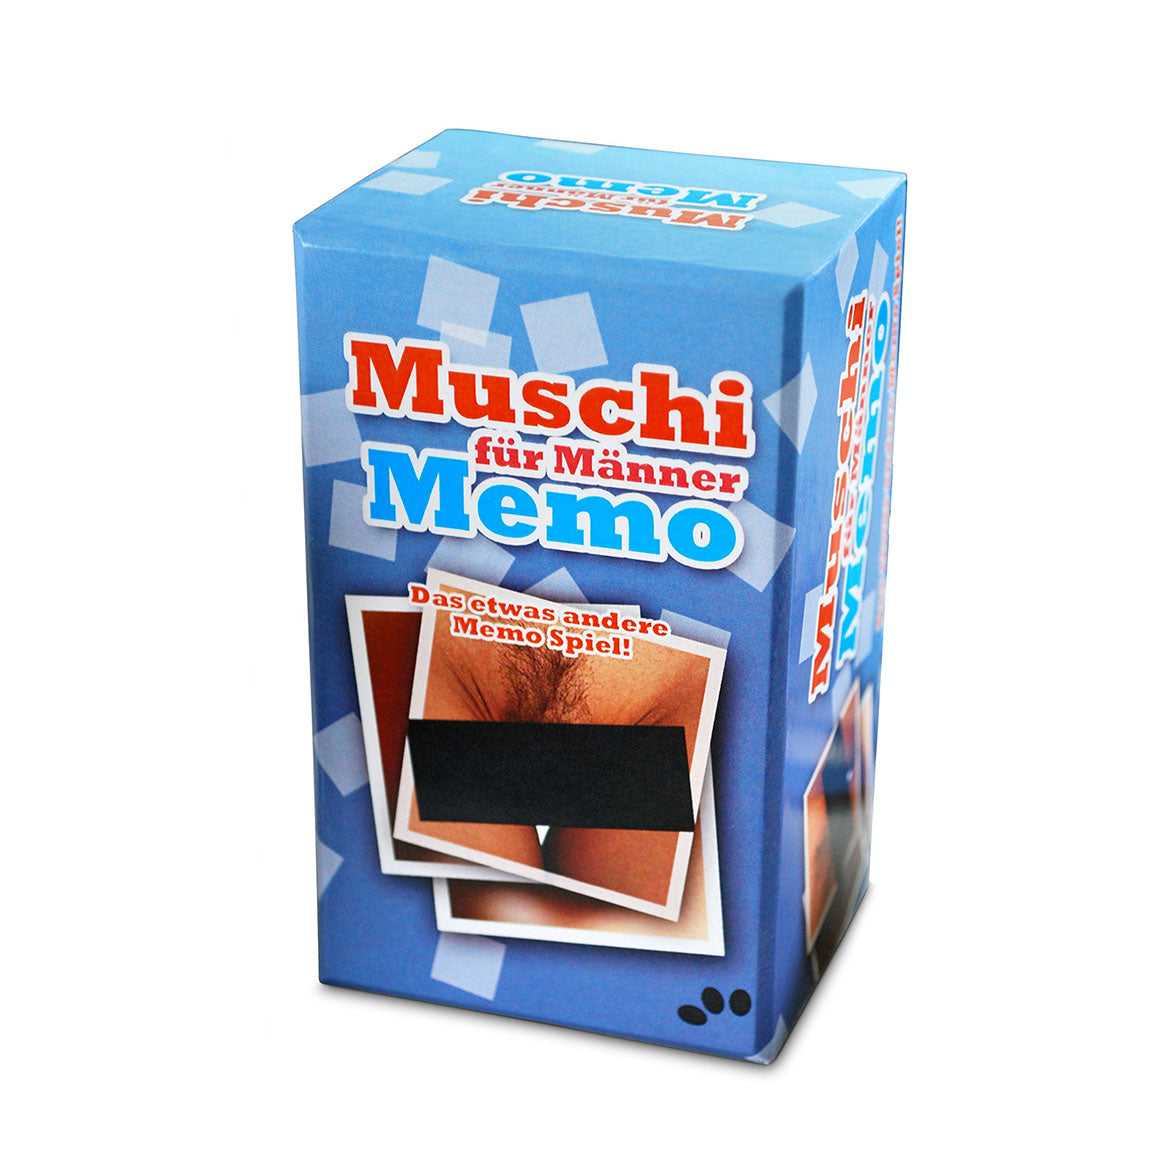 Muschi Memo - Erotik-Kartenspiel nur für Erwachsene